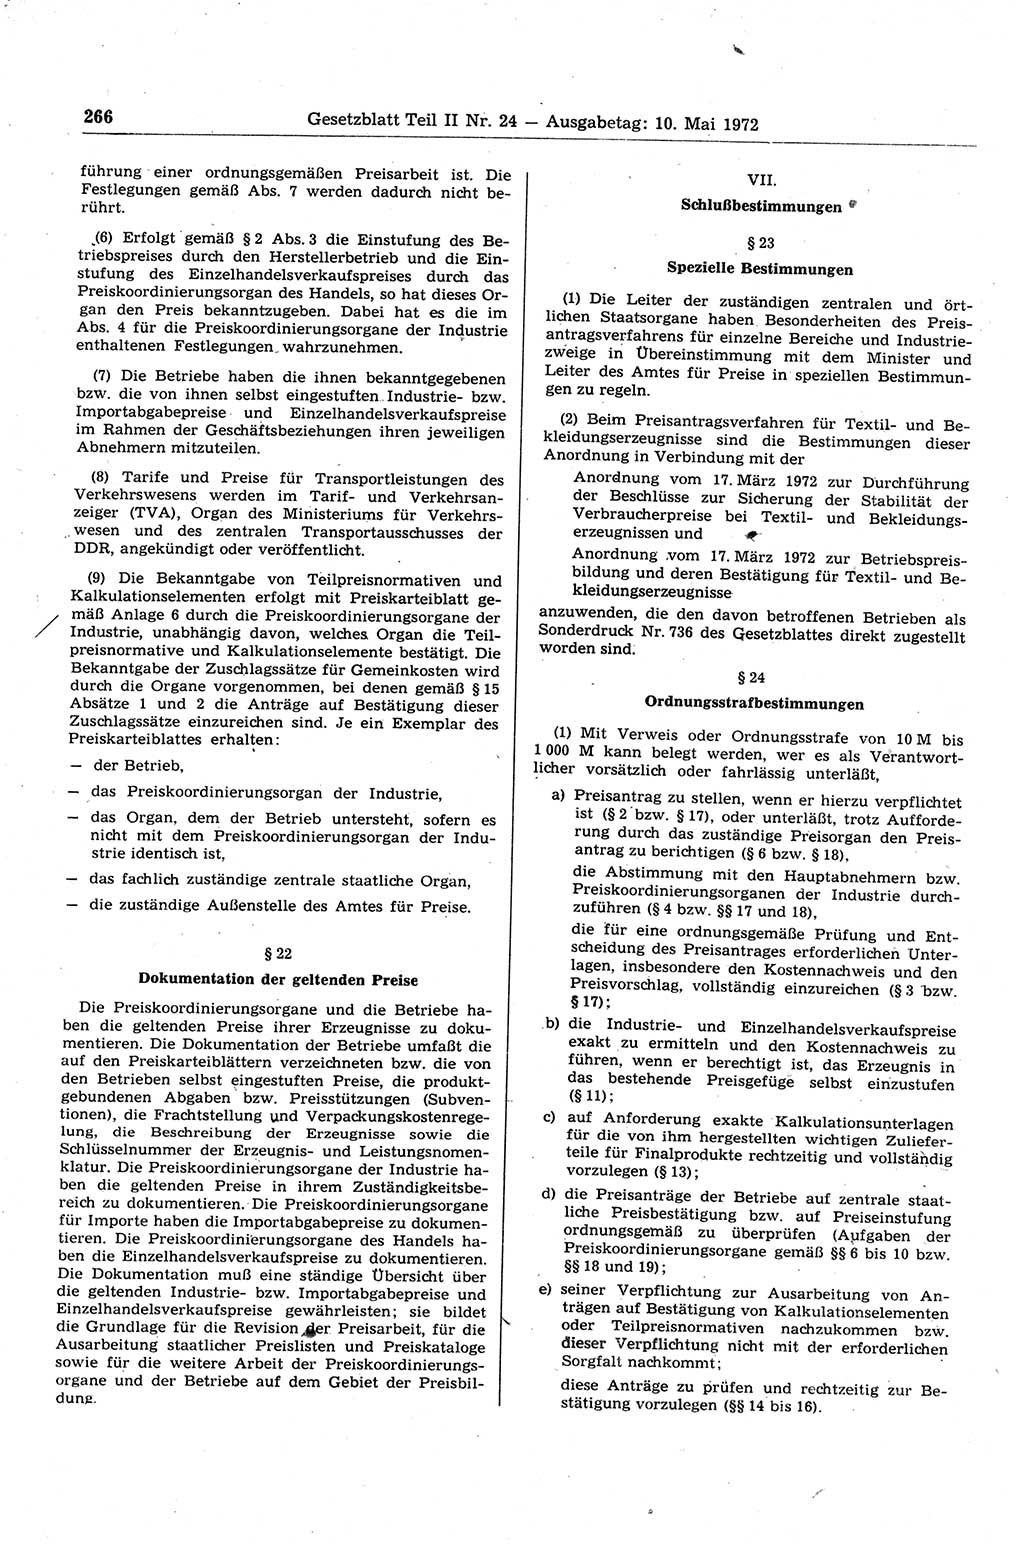 Gesetzblatt (GBl.) der Deutschen Demokratischen Republik (DDR) Teil ⅠⅠ 1972, Seite 266 (GBl. DDR ⅠⅠ 1972, S. 266)